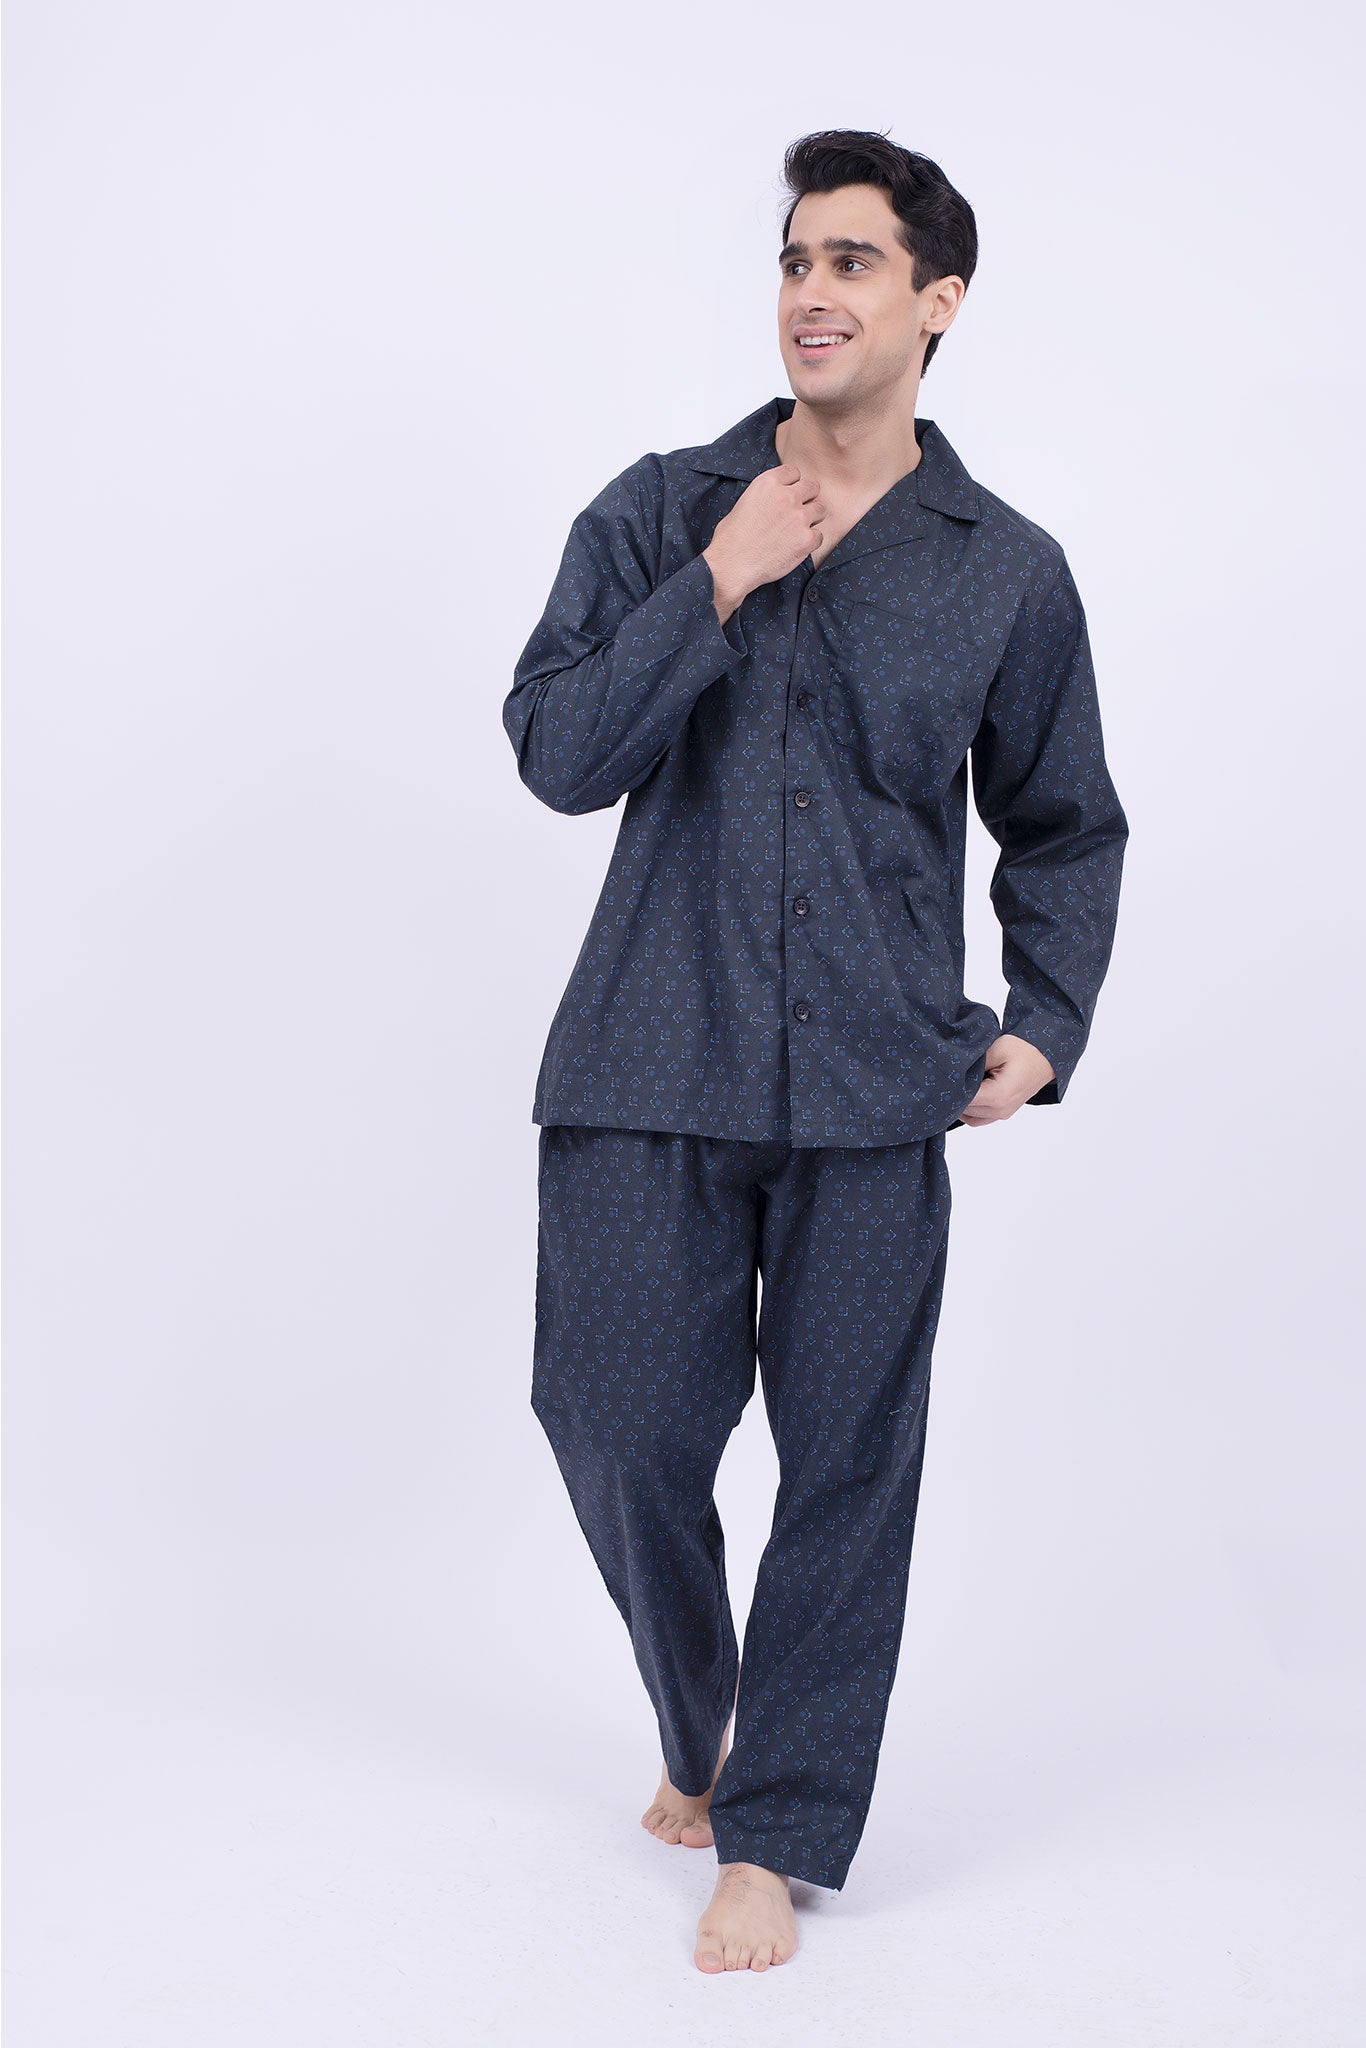 Soft Men's Silk Kimono Bathrobe Hooded Pajamas Male Nightgown Bath Robes  Lounge Robe Sleeveless Open Front